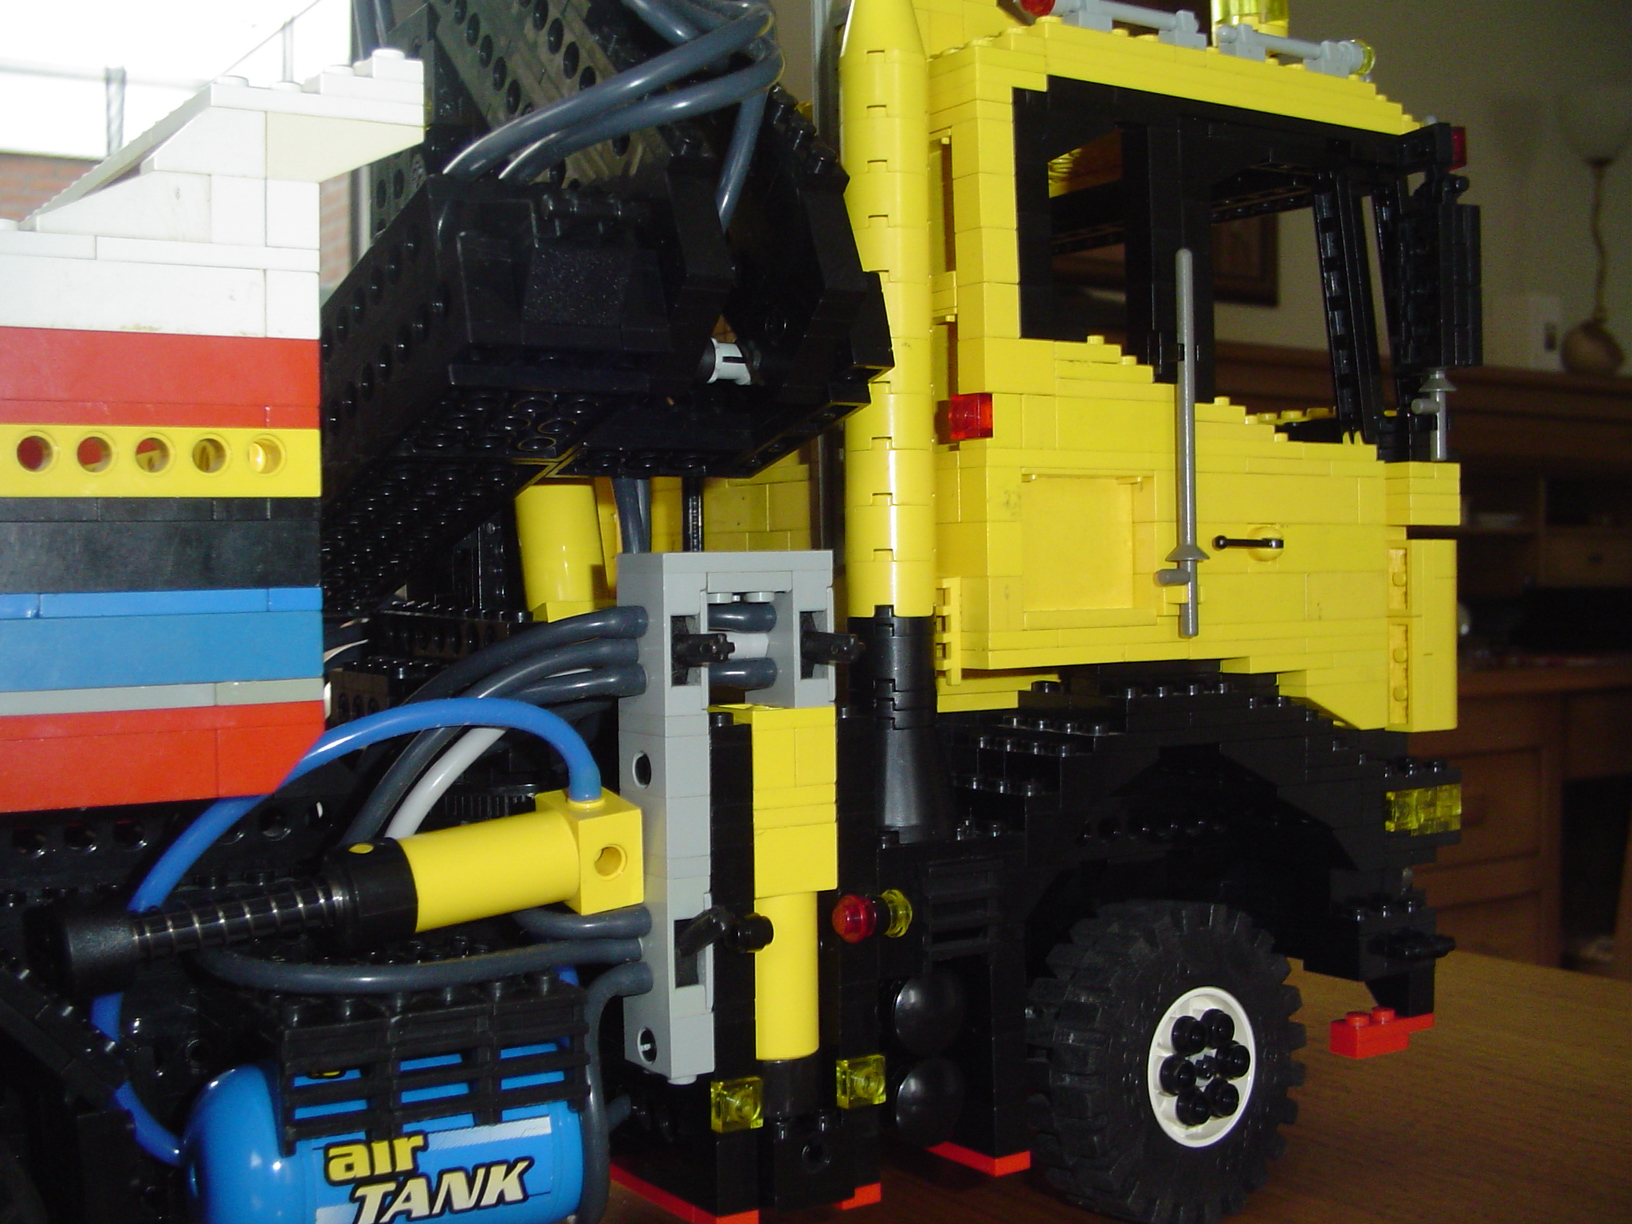 Lego Scania